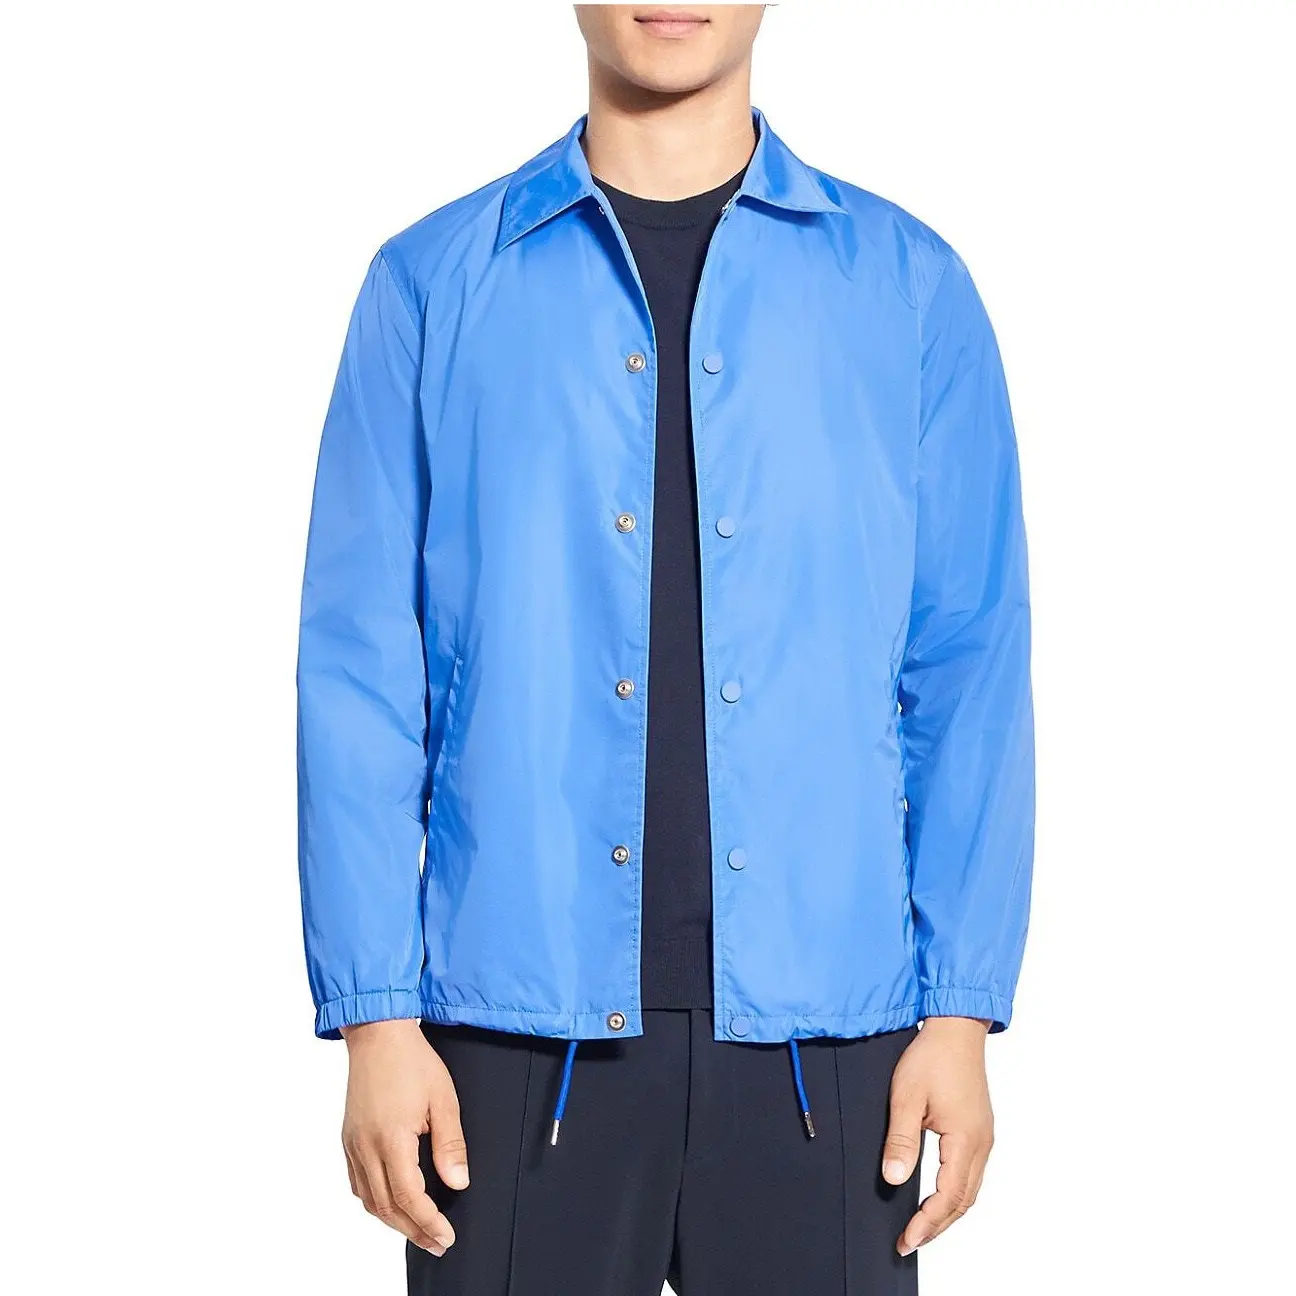 100% poliéster de alta calidad personalizado Anorak entrenadores chaquetas cortavientos acolchado transpirable chaqueta de hombre al aire libre para invierno